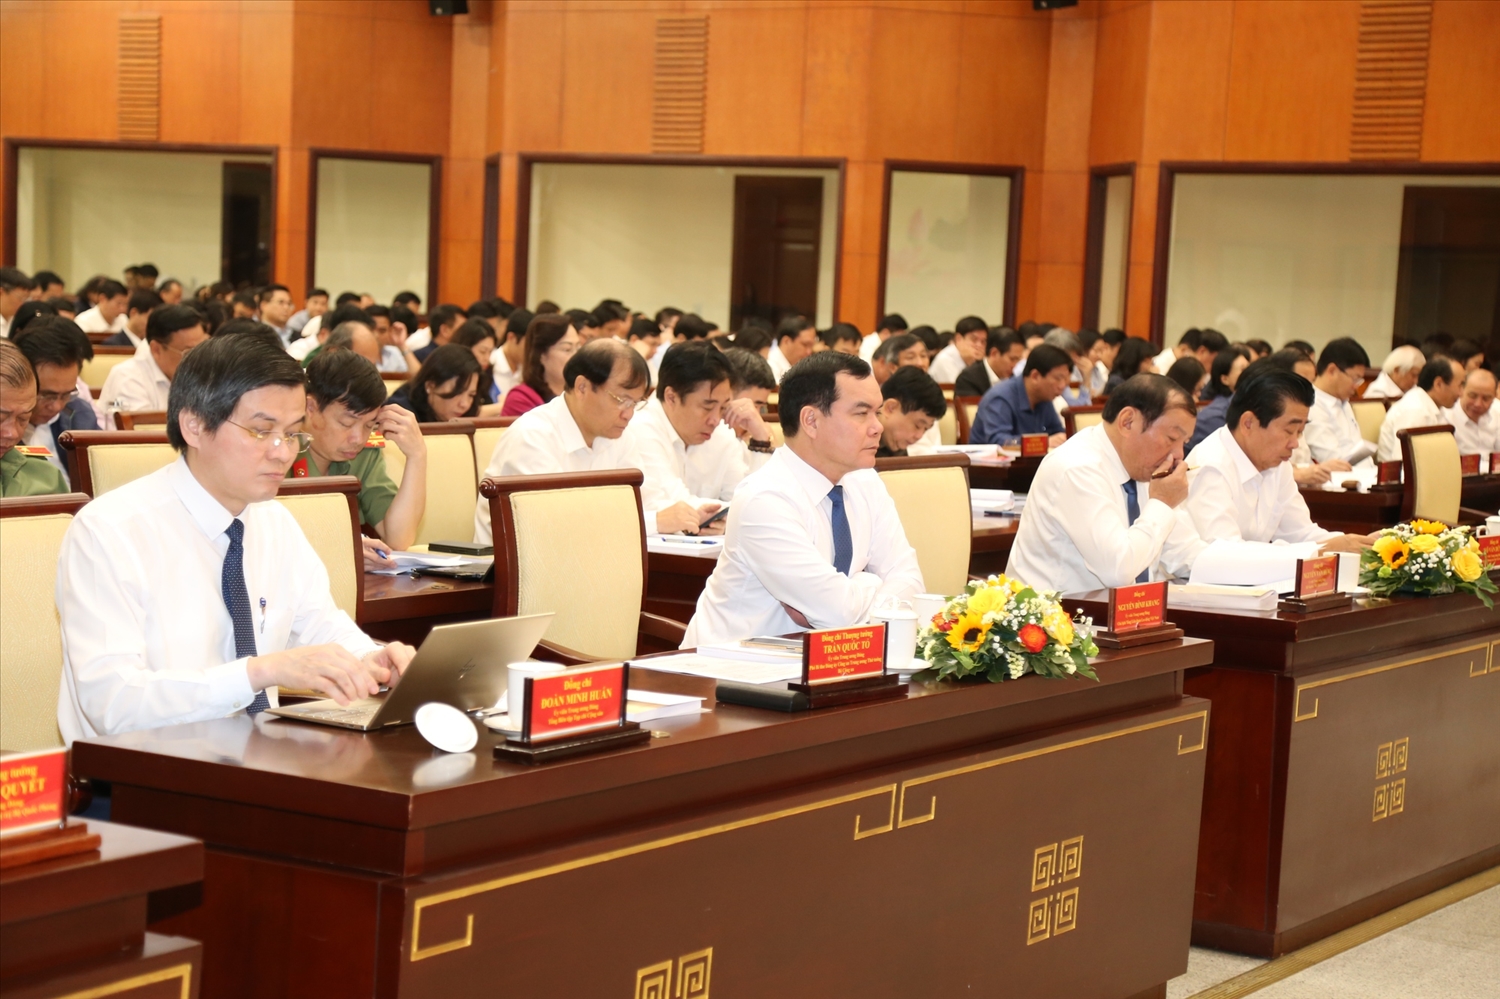 Bên cạnh những thành tích đã đạt được, hội nghị cũng chỉ ra một số hạn chế, khó khăn của công tác tuyên giáo trong thời gian qua - Ảnh: VGP/Vũ Phong